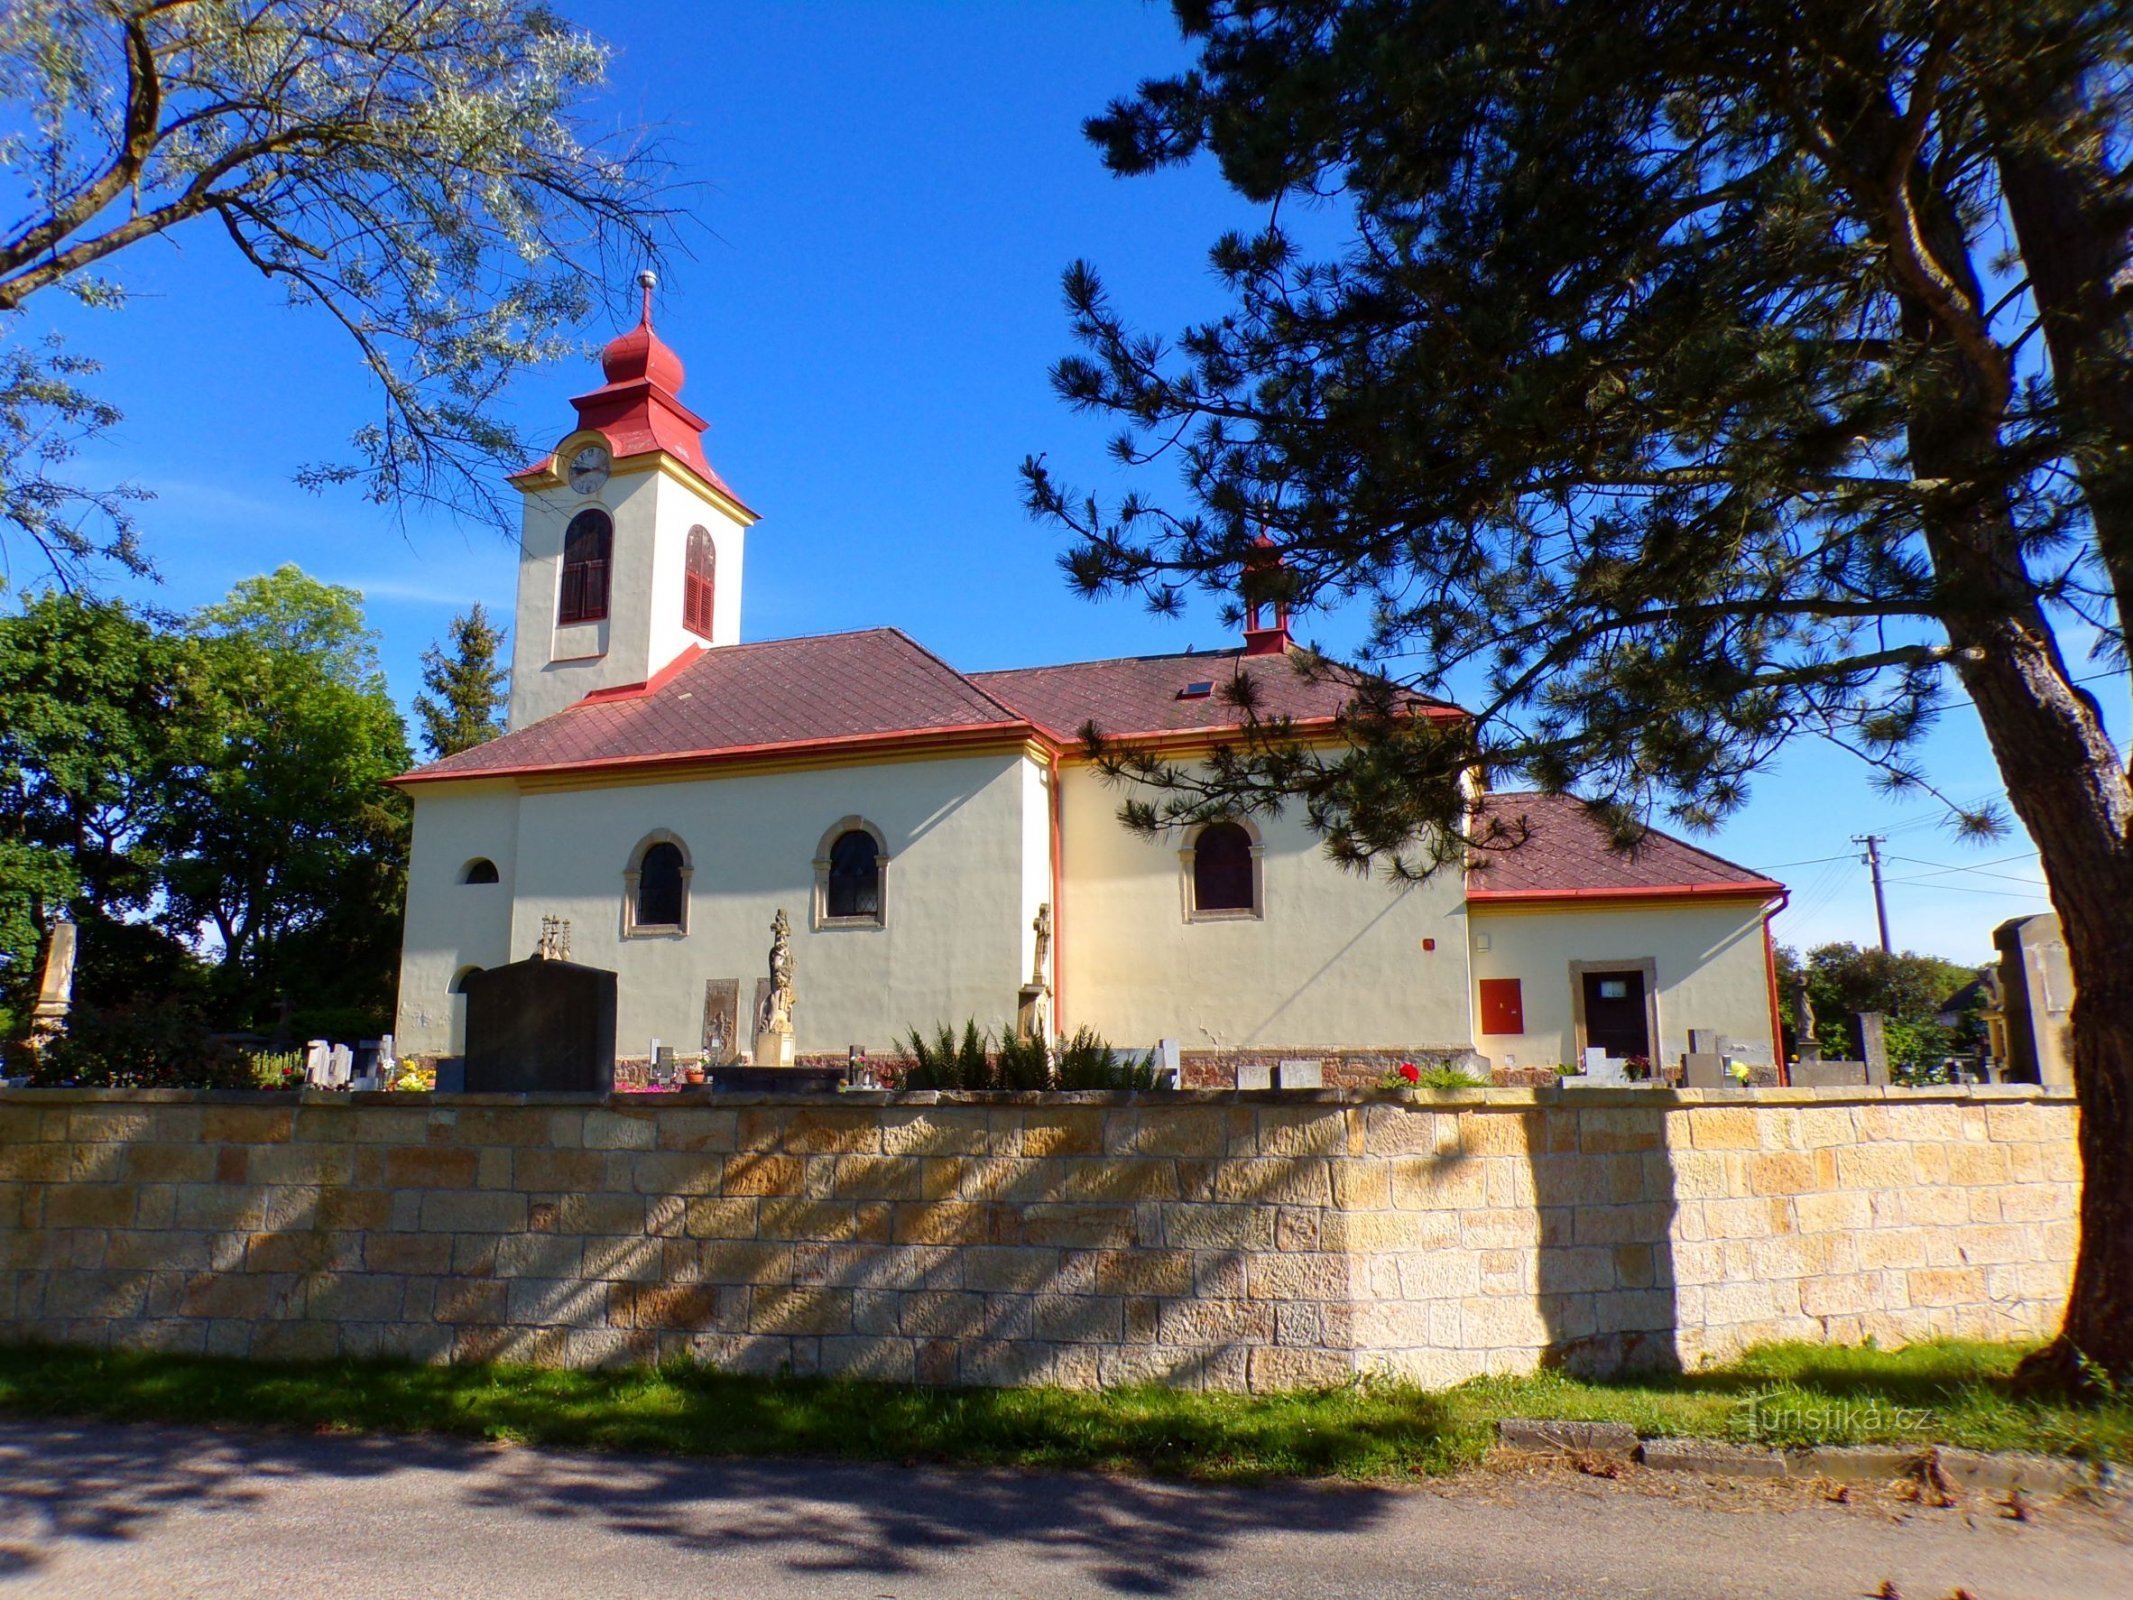 Church of St. Nicholas, bishop (Choteč, 31.5.2022)